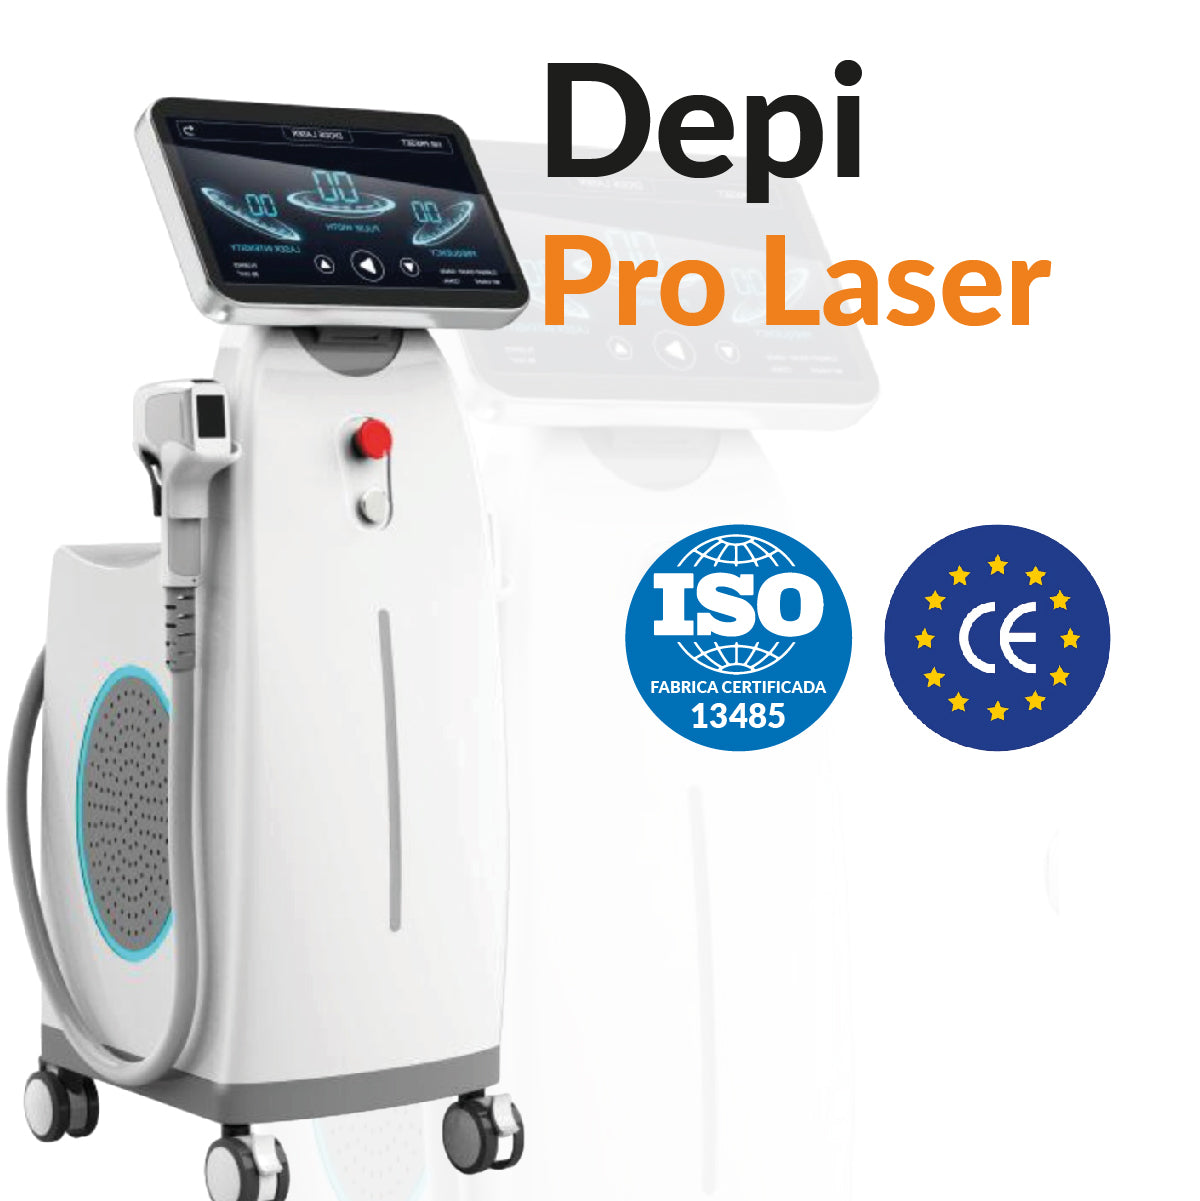 Depi Pro Laser